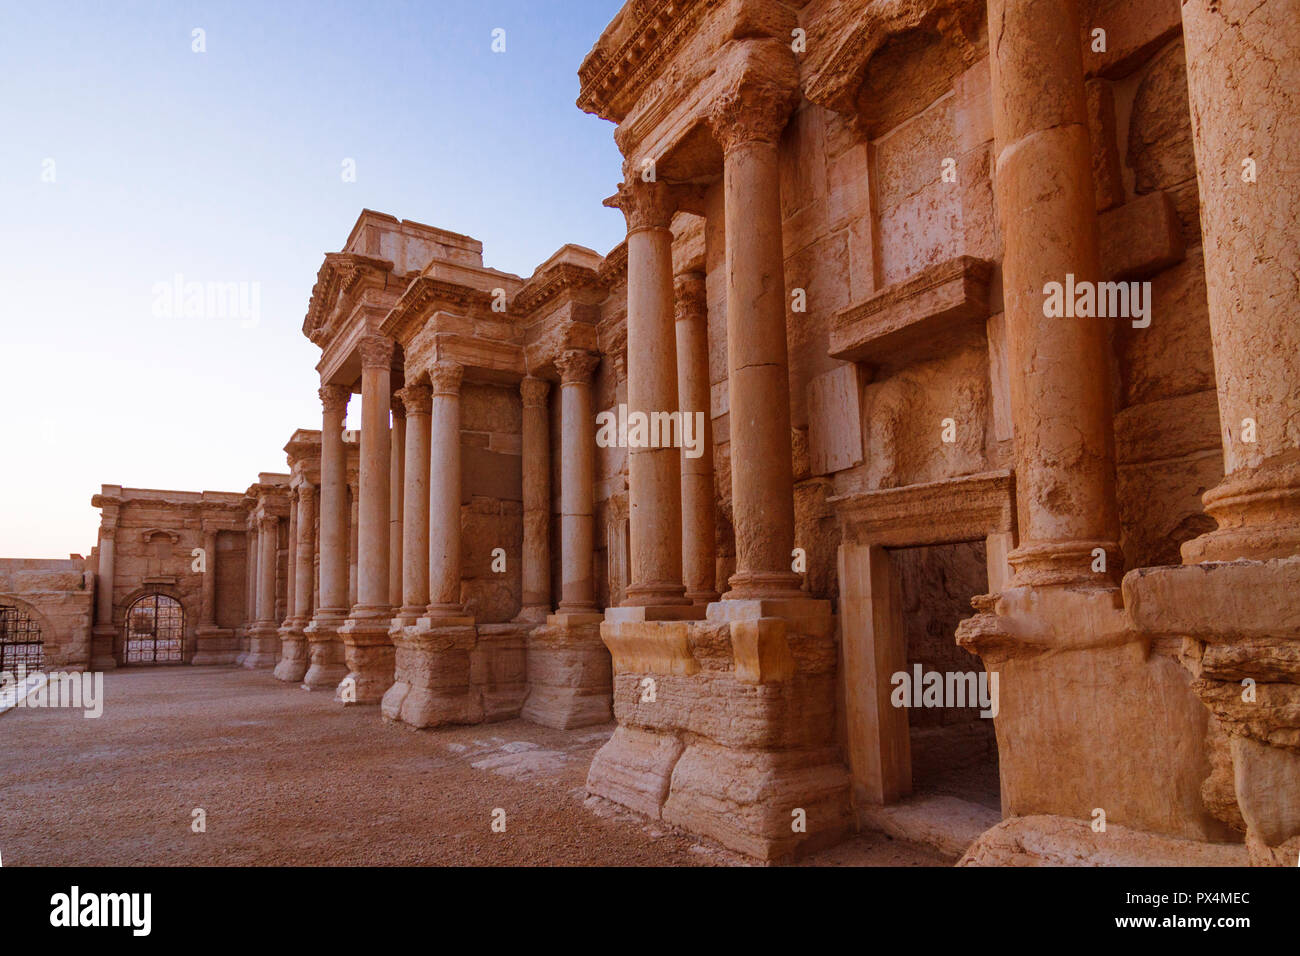 Palmyra, Homs Governatorato, Siria - Maggio 27th, 2009 : stadio del secondo secolo D.C. il teatro romano di Palmyra che rimane ancora in gran parte intatto dopo t Foto Stock